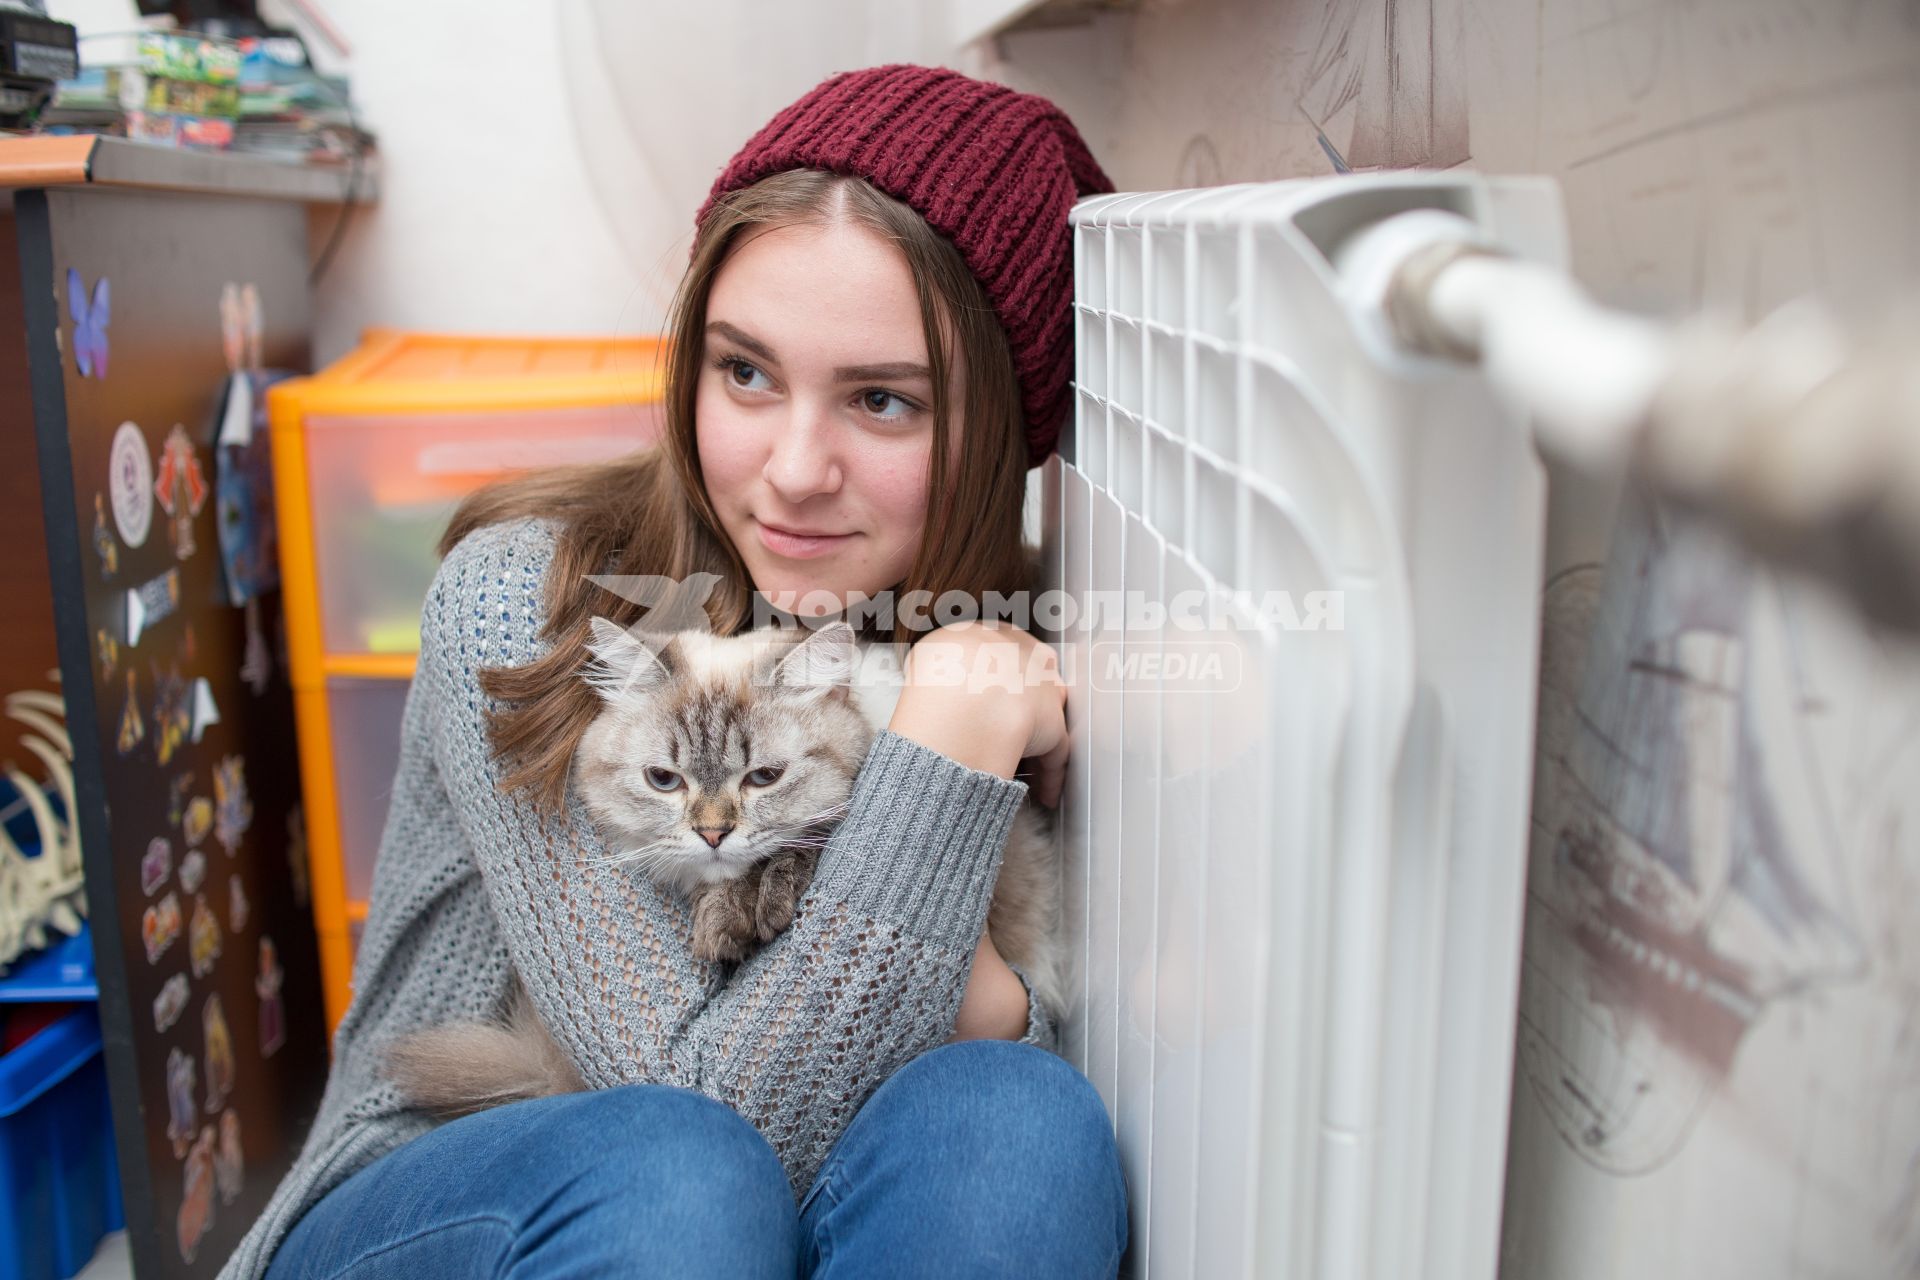 Челябинск.  Девушка с кошкой  сидит возле батареи центрального отопления.